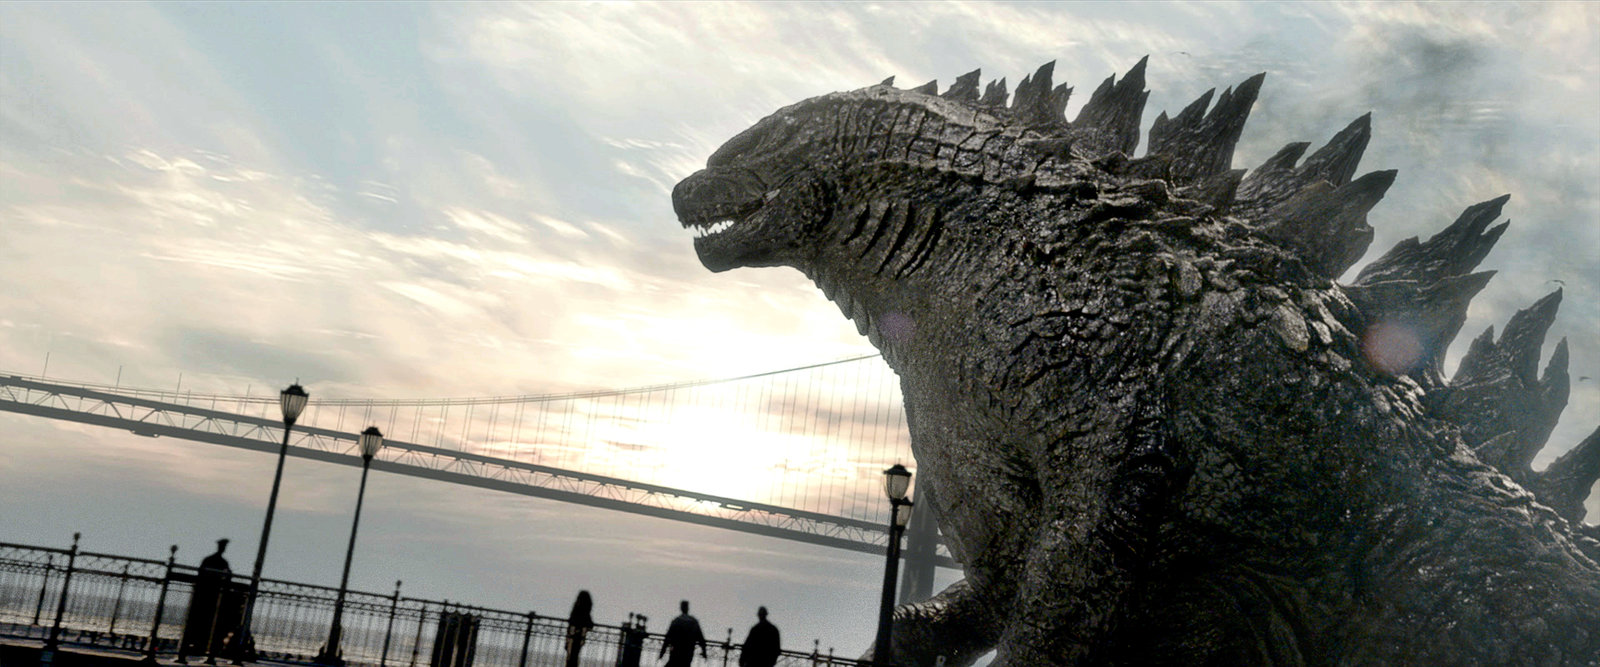 Godzilla (2014) (blu-ray)